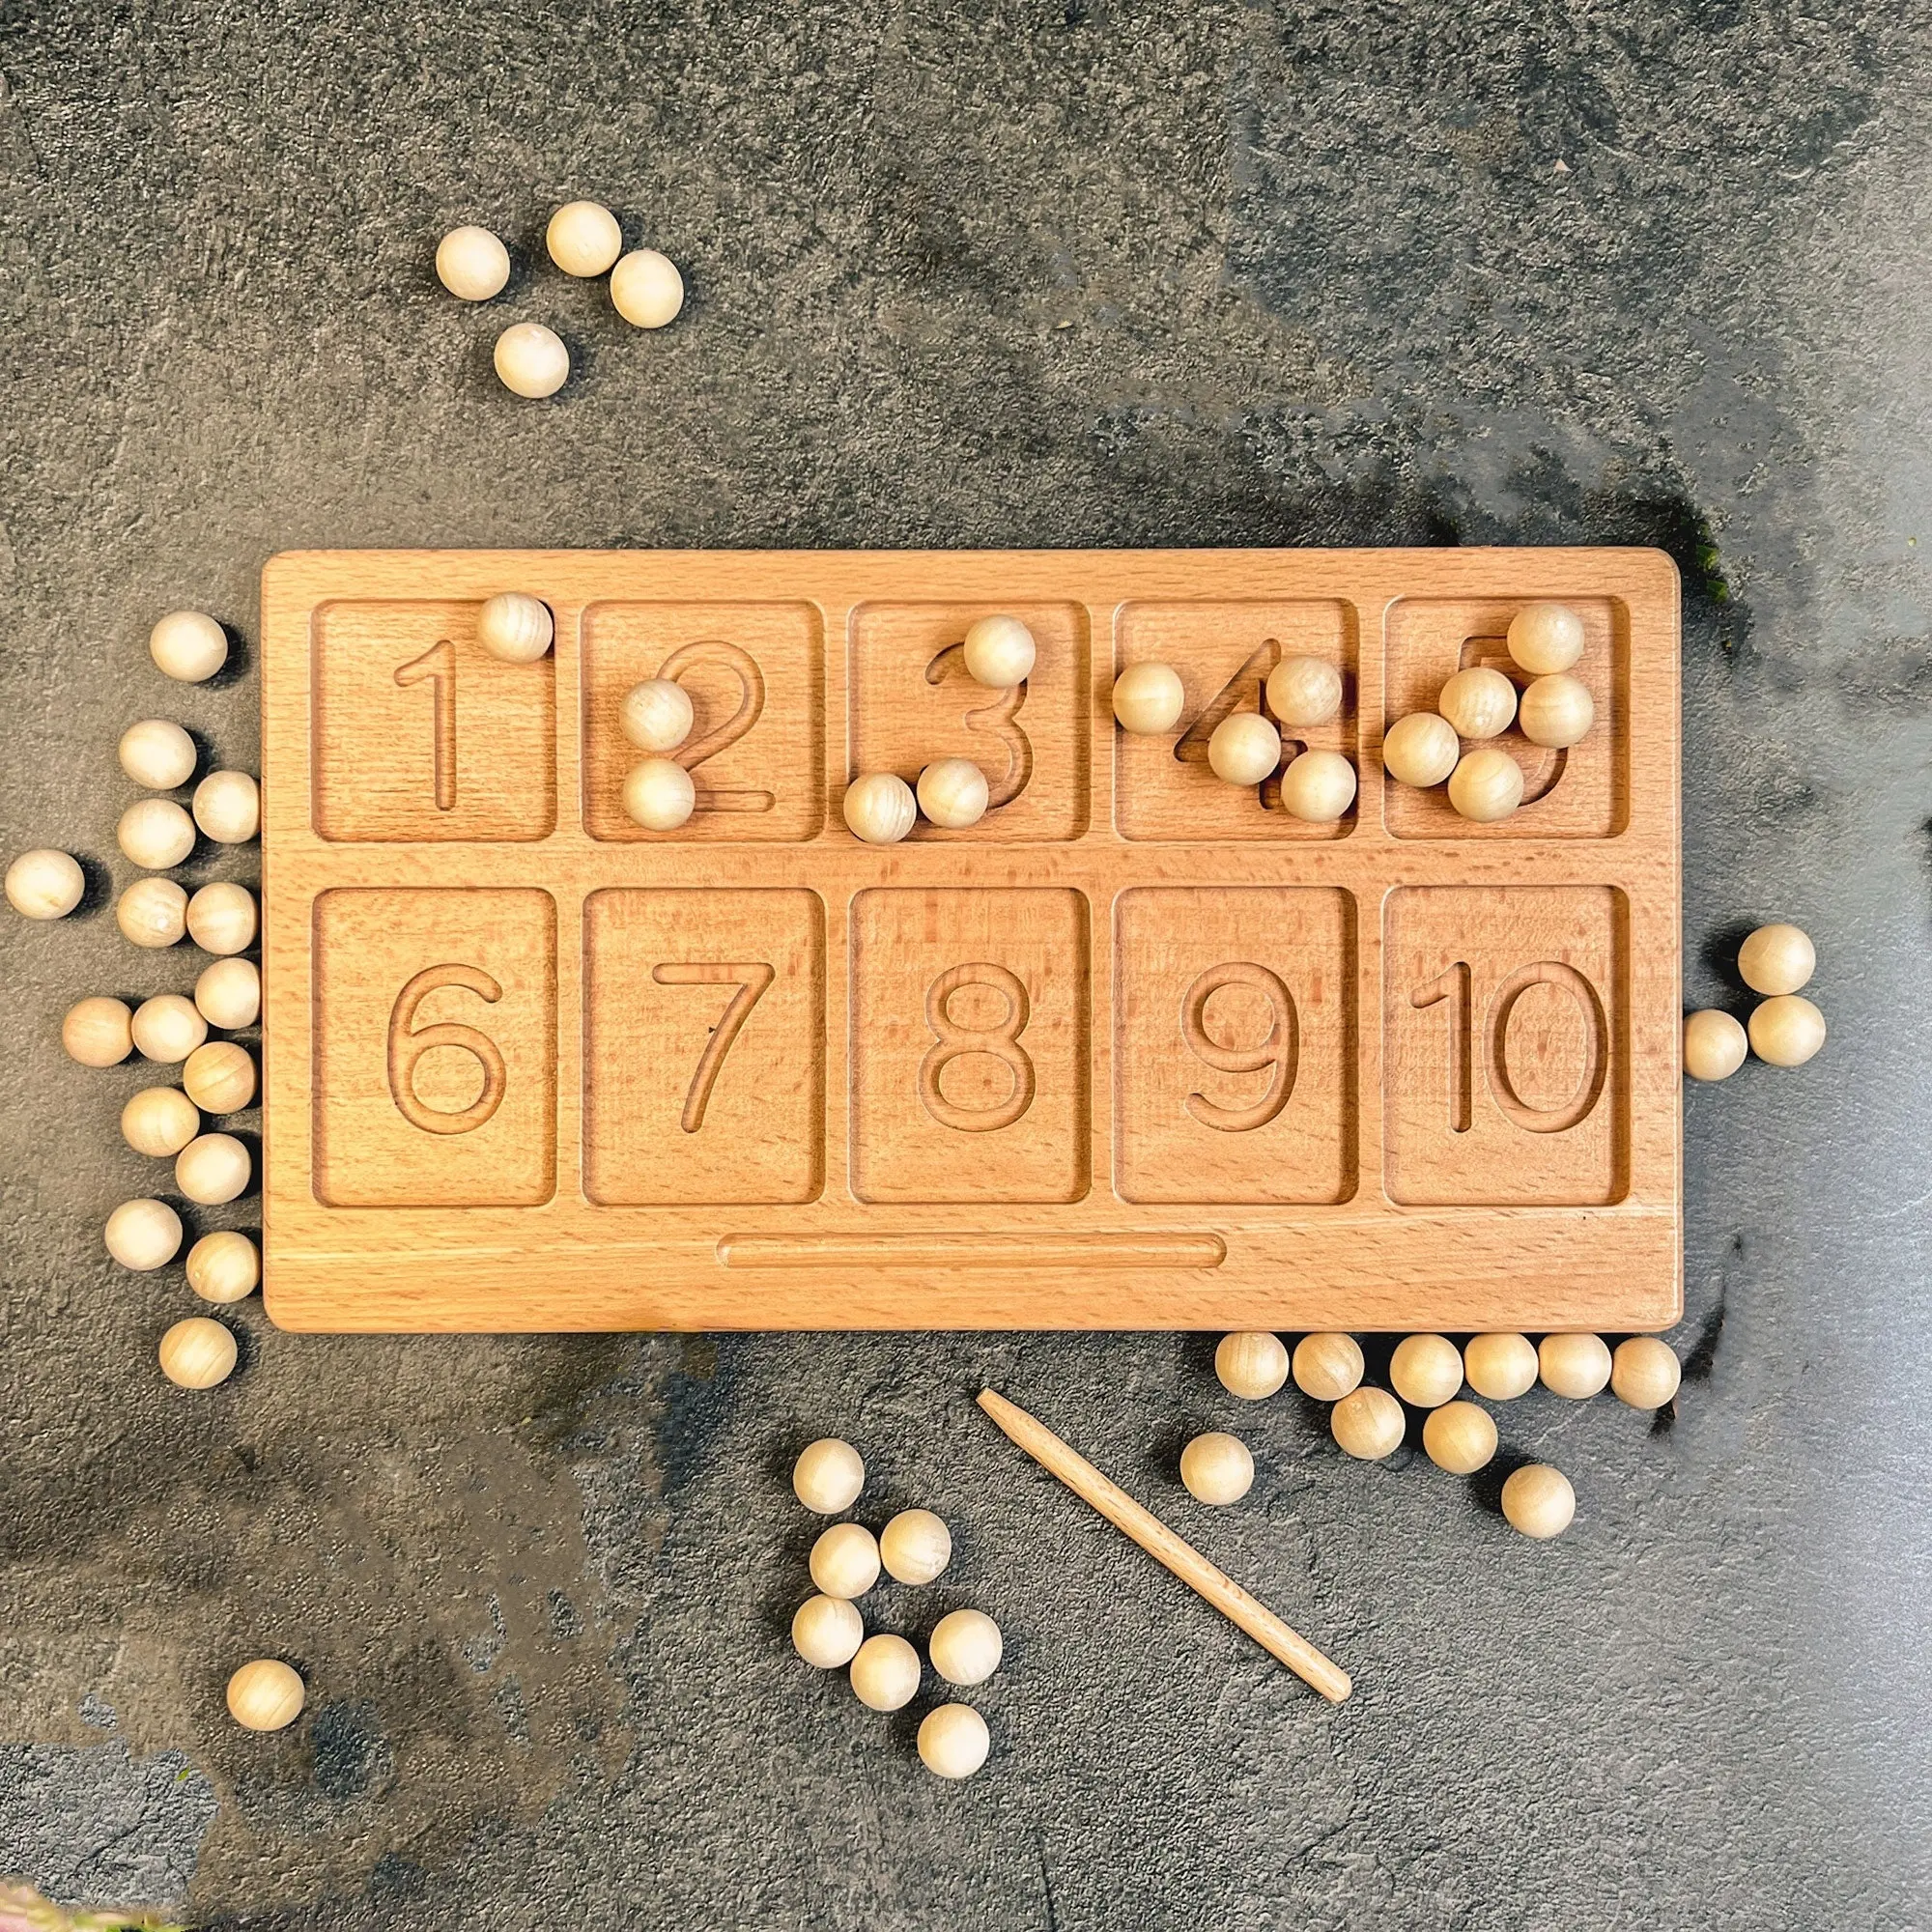 עץ מספר התחקות לוח/חרוזים משחק בגיל רך מתמטיקה משחק התאמת משחק לילדים/מספרים משלים ספירה מונטסורי צעצועים